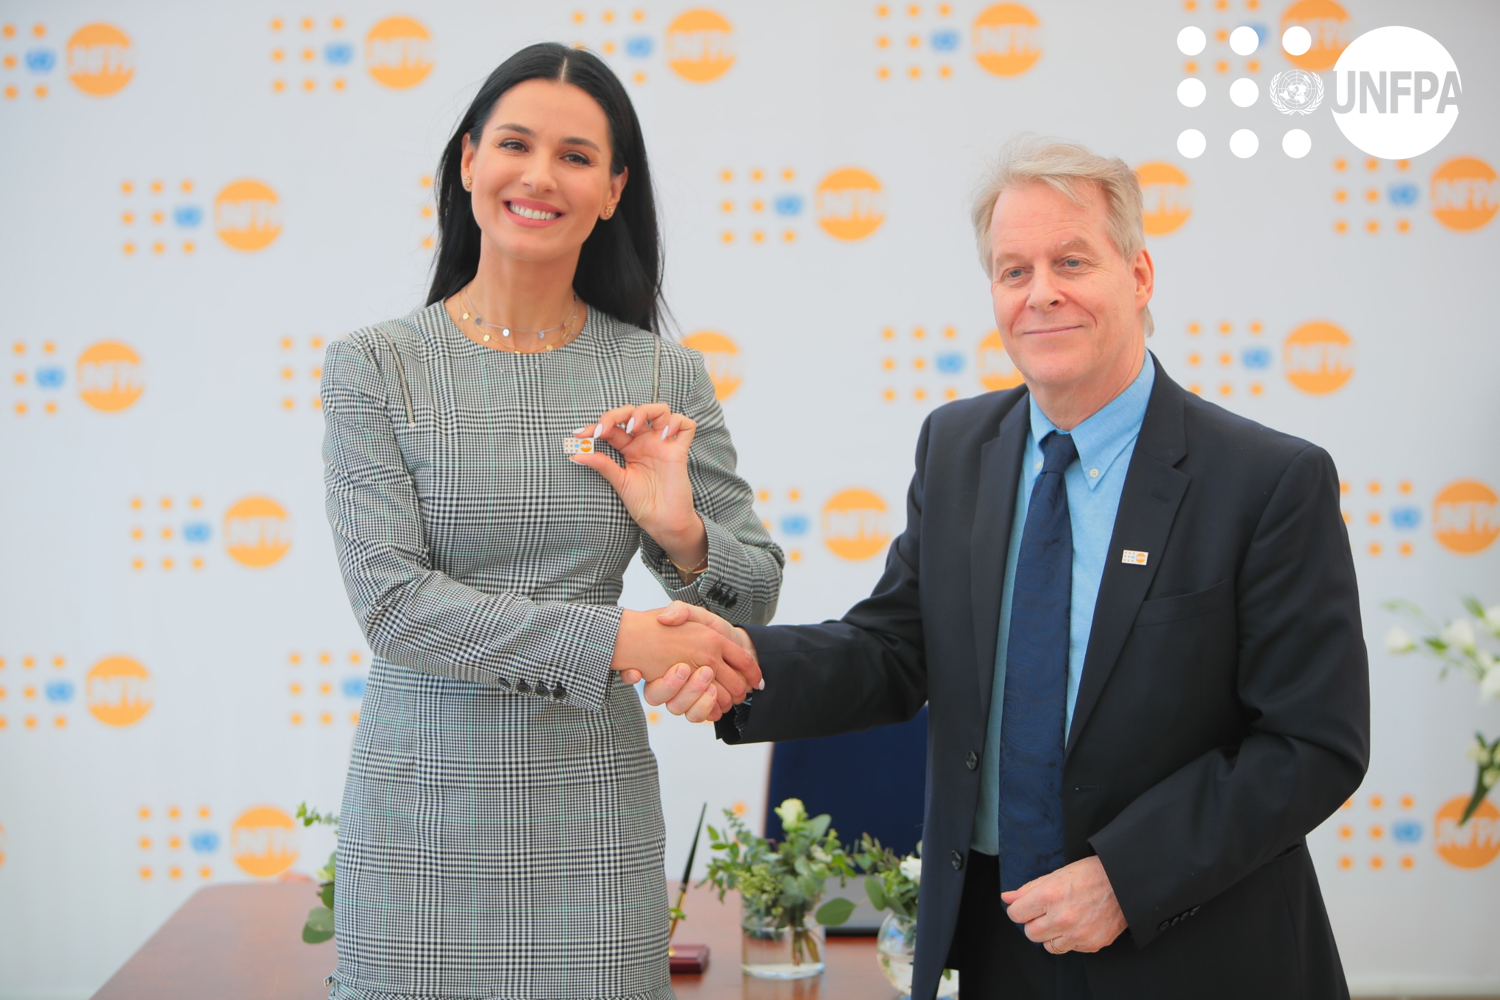 Маша Ефросинина и представитель UNFPA в Украине Каспар Пик